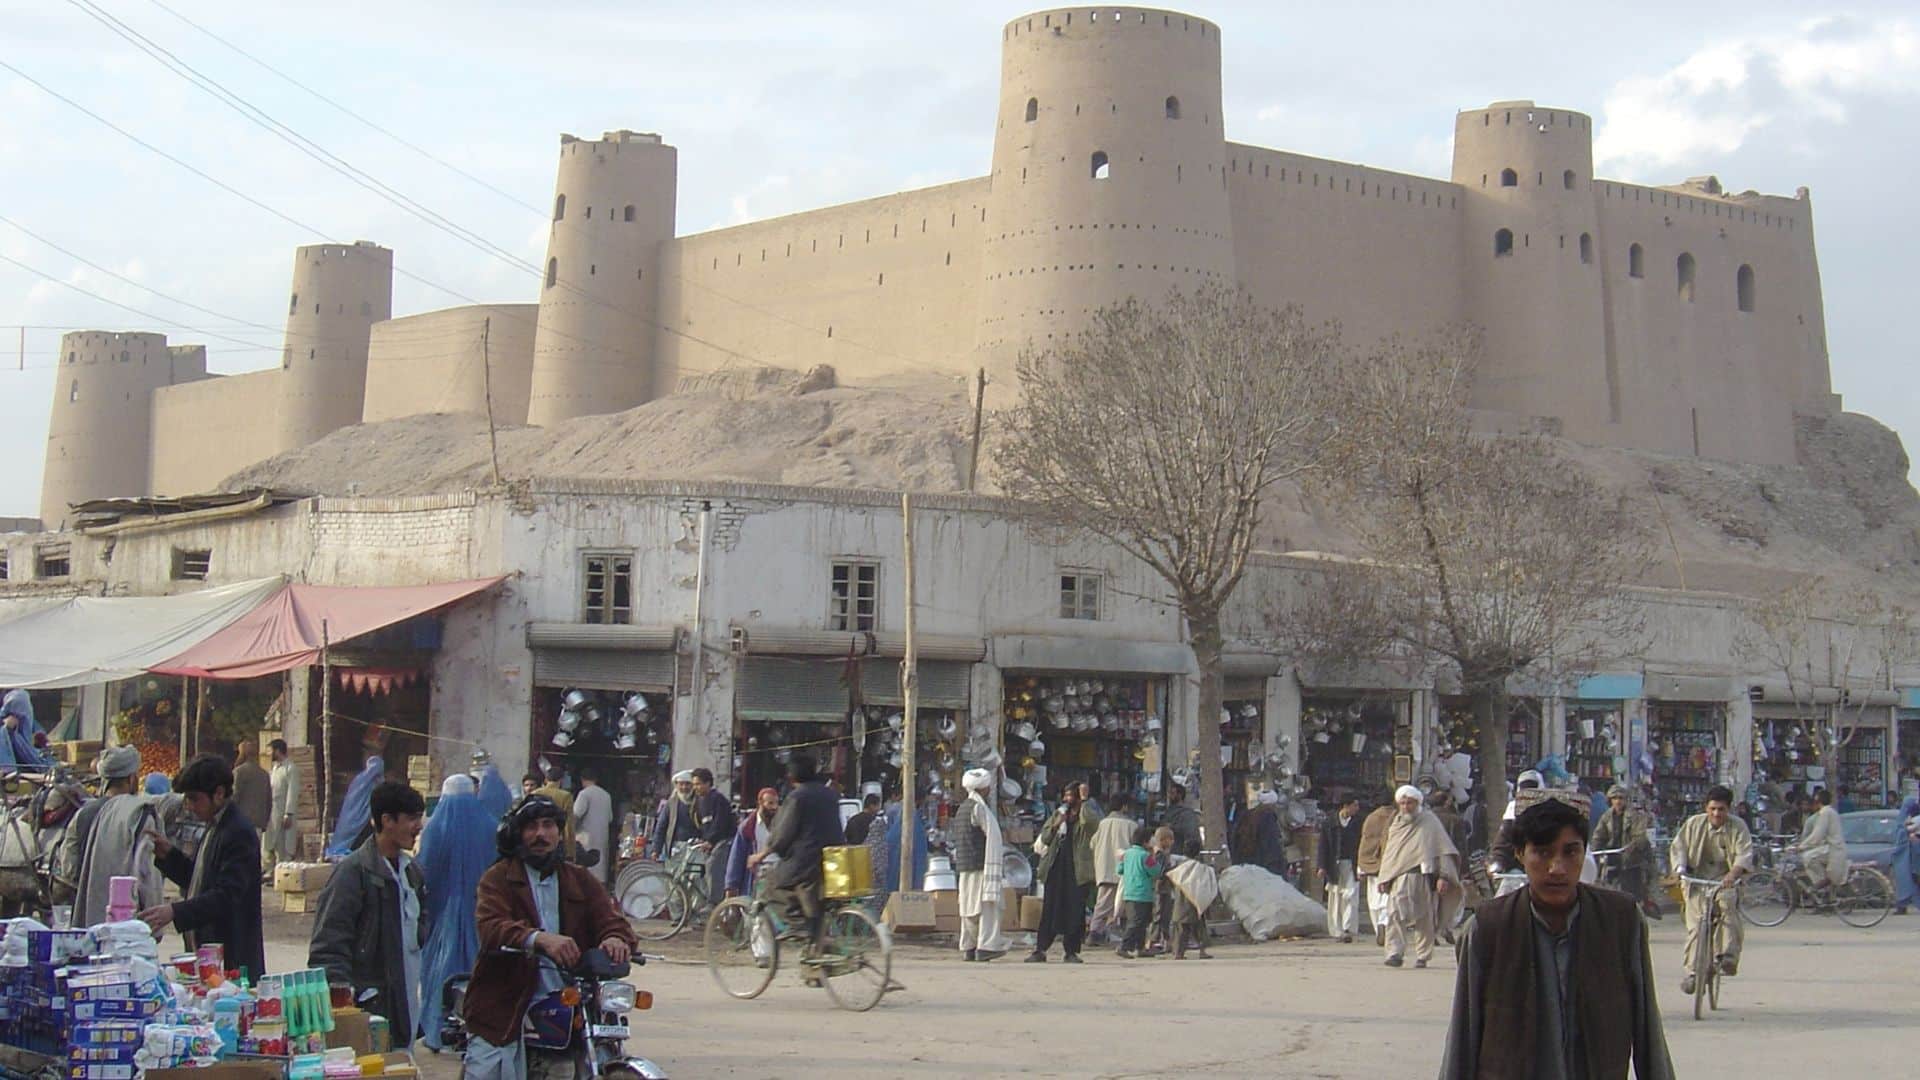 Talibã bane criptomoedas no Afeganistão, fecha 16 corretoras e prende 13 pessoas